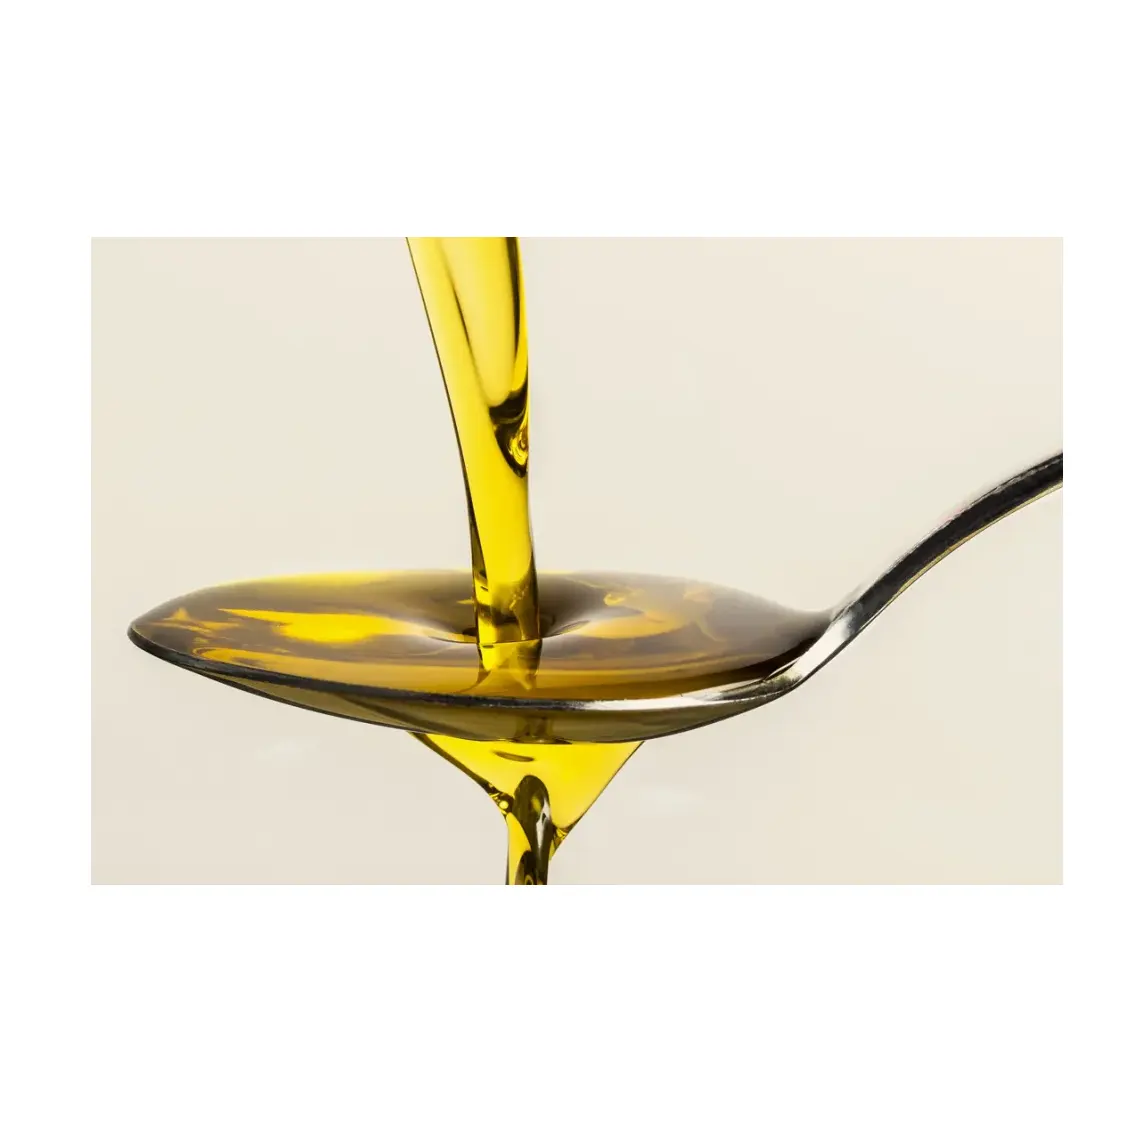 Großhandel Exporteur Großbestand an raffiniertem Rapsöl / Canola-Speiseöl zum Verkauf zu niedrigem Preis rohes Rapsöl zertifiziert oder